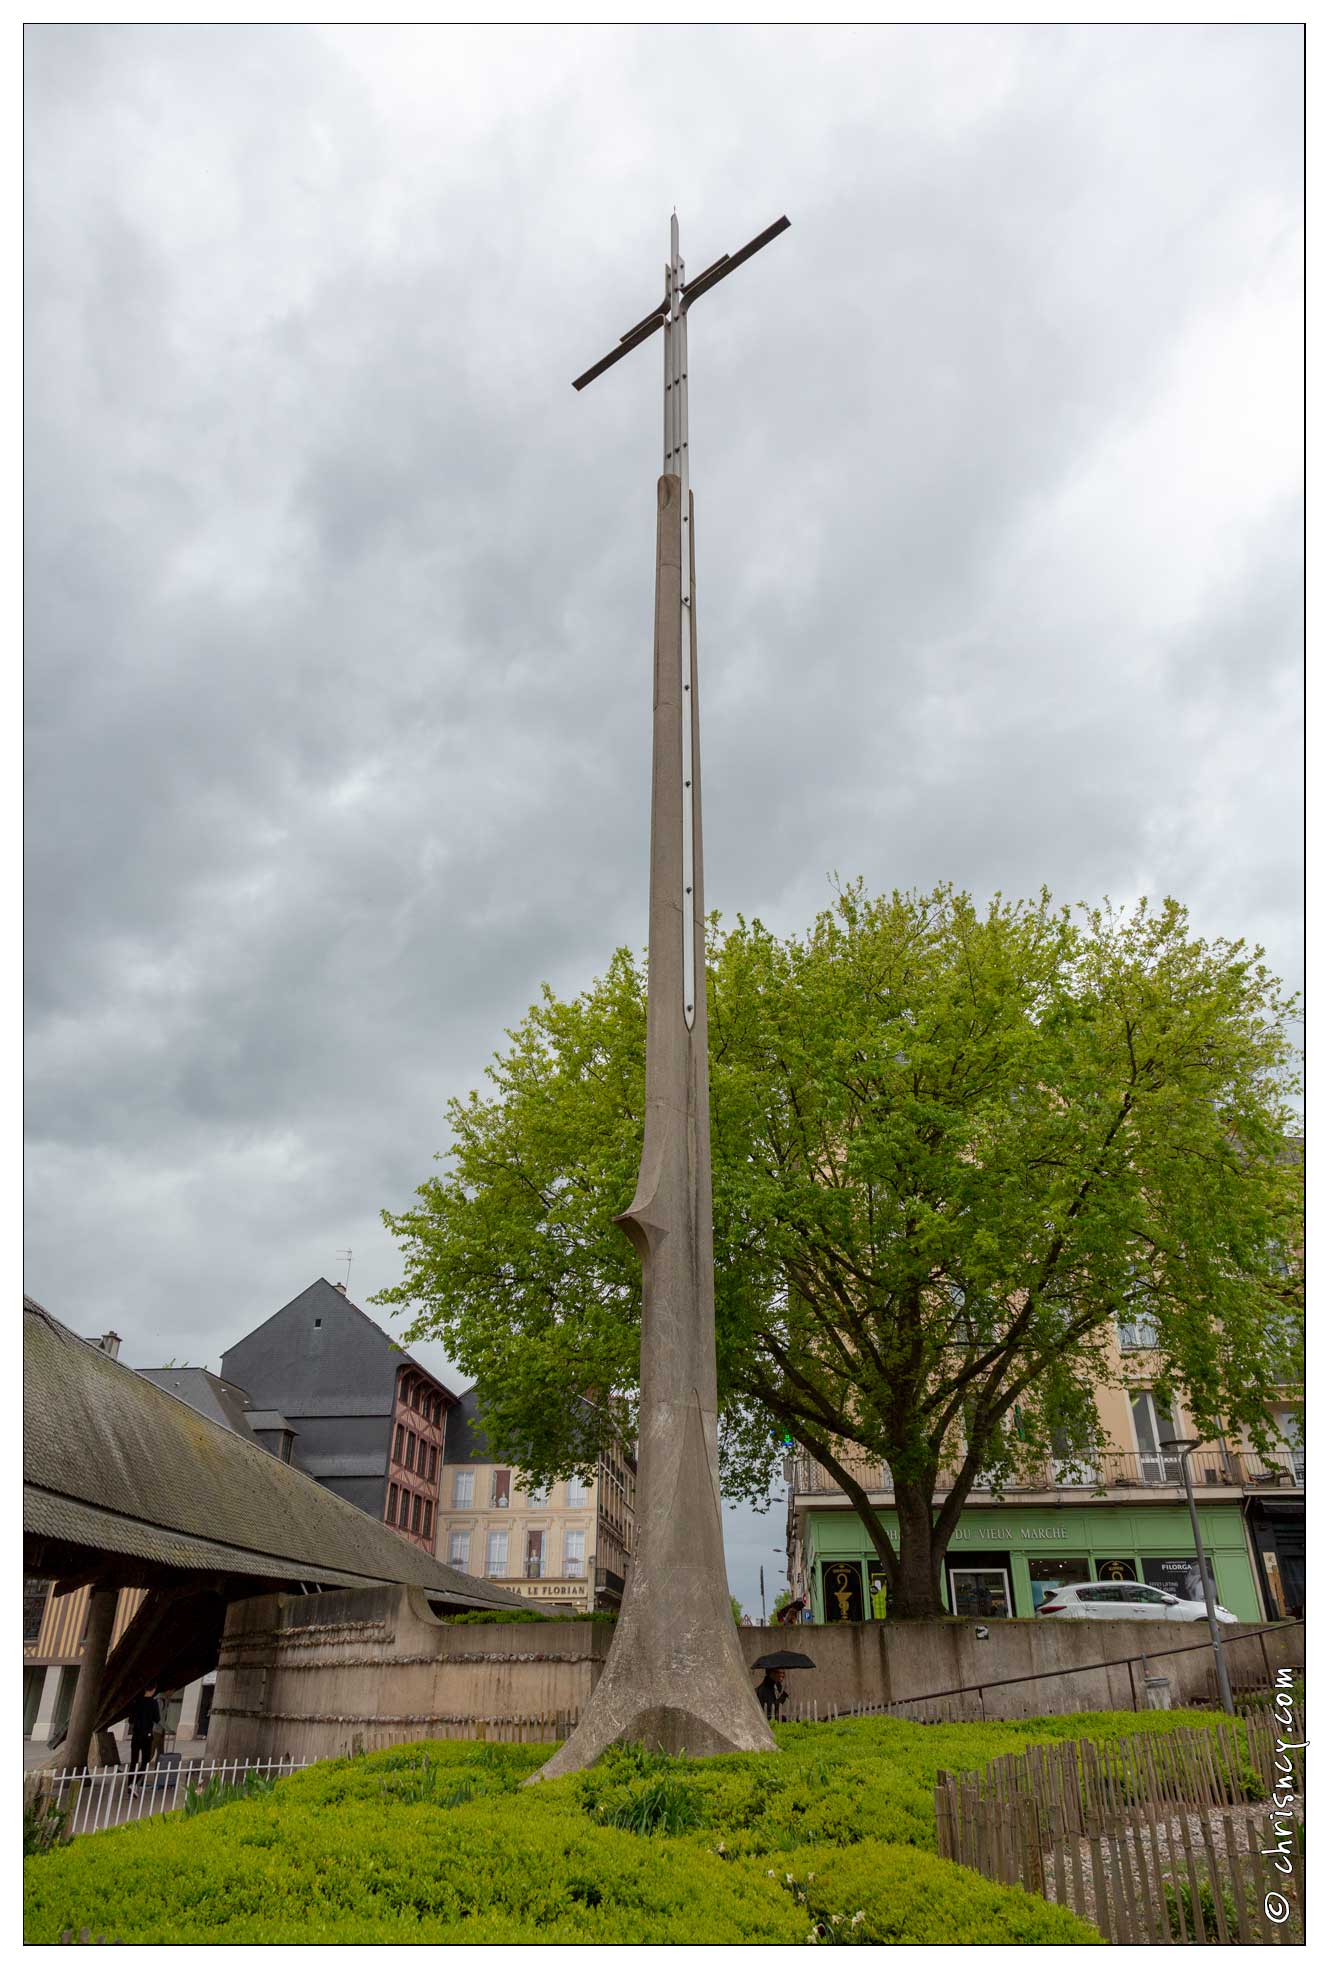 20180427-93_6131-Rouen_Eglise_Sainte_Jeanne_d'Arc_Le_Bucher.jpg